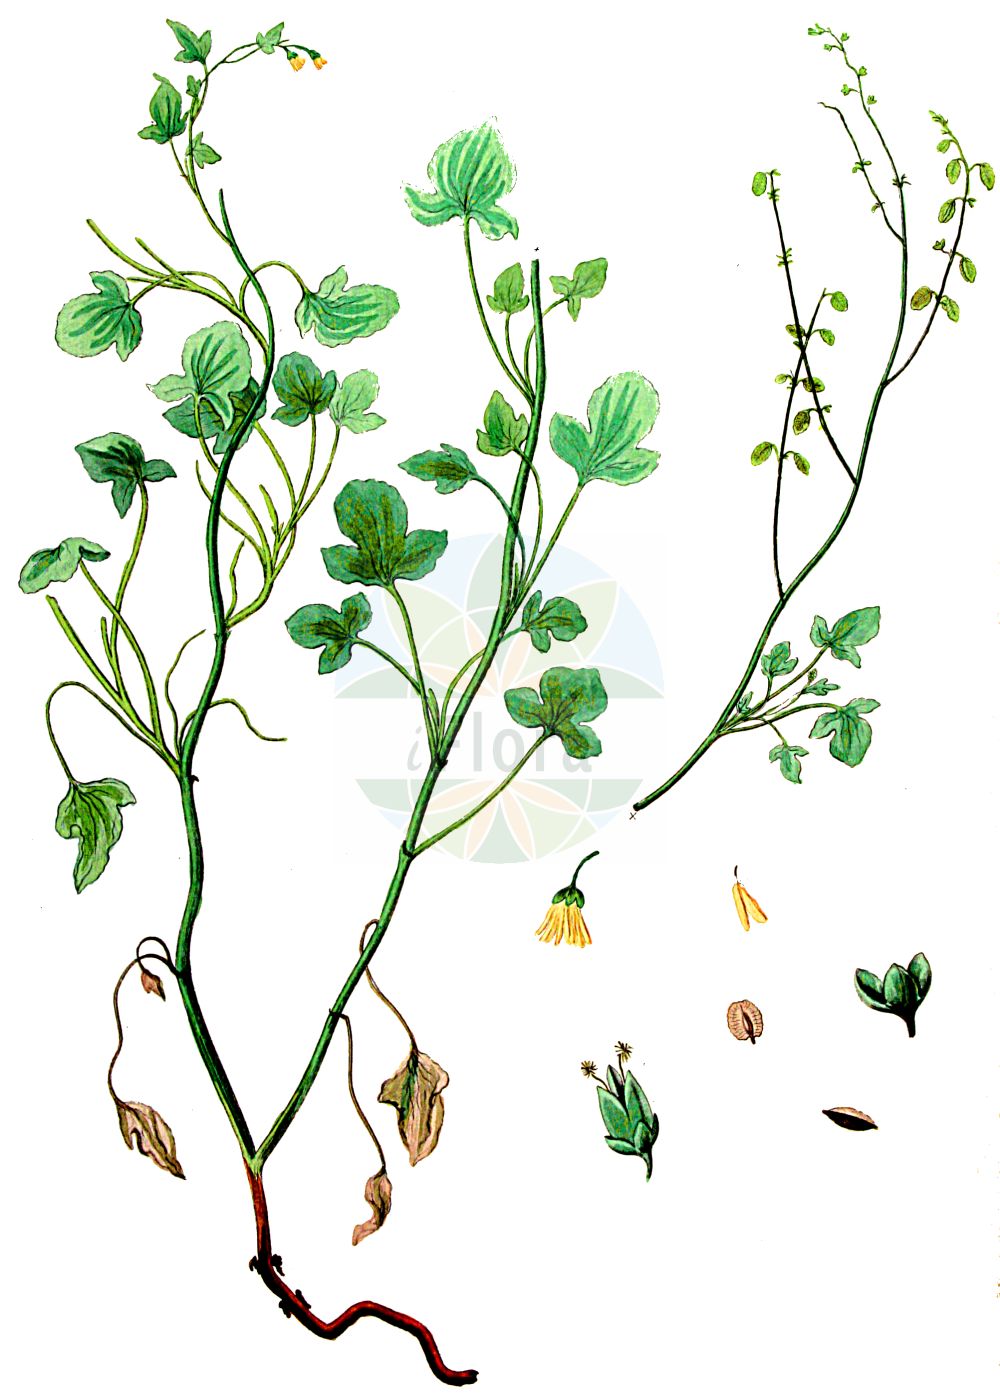 Historische Abbildung von Rumex scutatus (Schild-Ampfer - French Sorrel). Das Bild zeigt Blatt, Bluete, Frucht und Same. ---- Historical Drawing of Rumex scutatus (Schild-Ampfer - French Sorrel). The image is showing leaf, flower, fruit and seed.(Rumex scutatus,Schild-Ampfer,French Sorrel,Acetosa alpestris,Acetosa scutata,Rumex alpestris,Rumex glaucus,Rumex pubescens,Rumex scutatus,Rumex scutatus subsp. glaucus,Schild-Ampfer,French Sorrel,Shield Dock,Rumex,Ampfer,Sorrel,Polygonaceae,Knöterichgewächse,Knotgrass family,Blatt,Bluete,Frucht,Same,leaf,flower,fruit,seed,Kops (1800-1934))